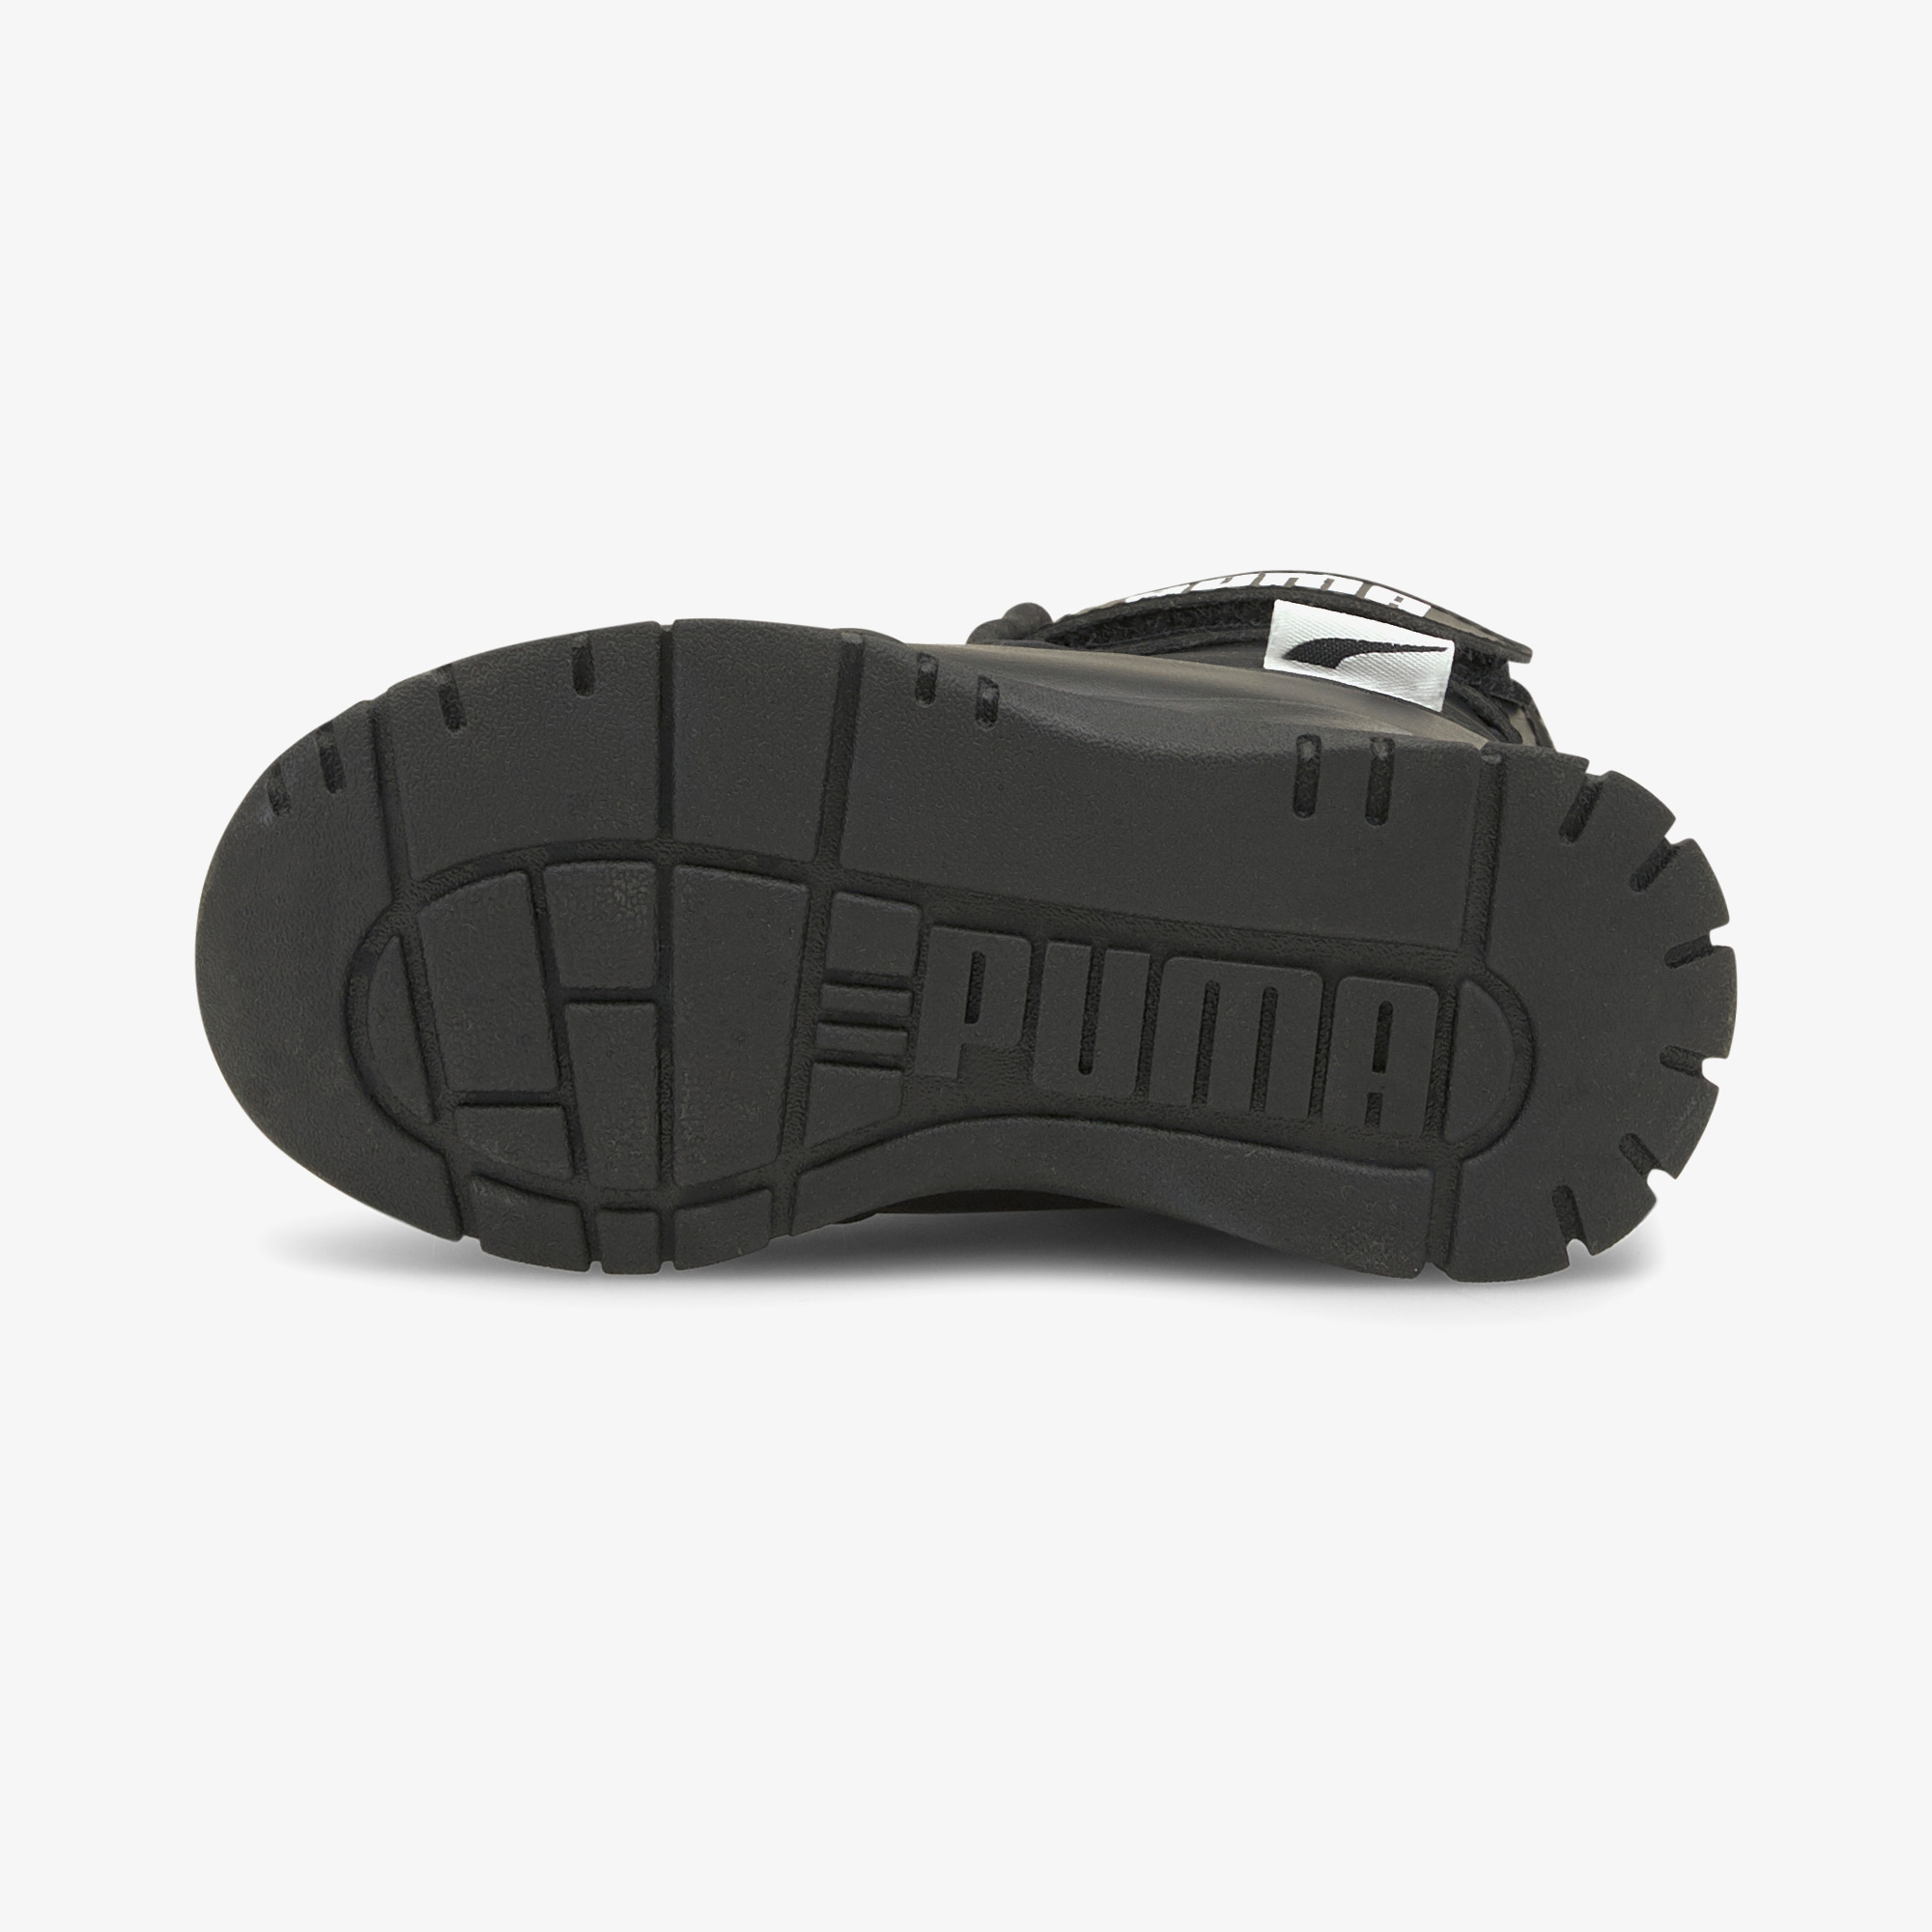 Puma Nieve Bebek Siyah Spor Ayakkabı